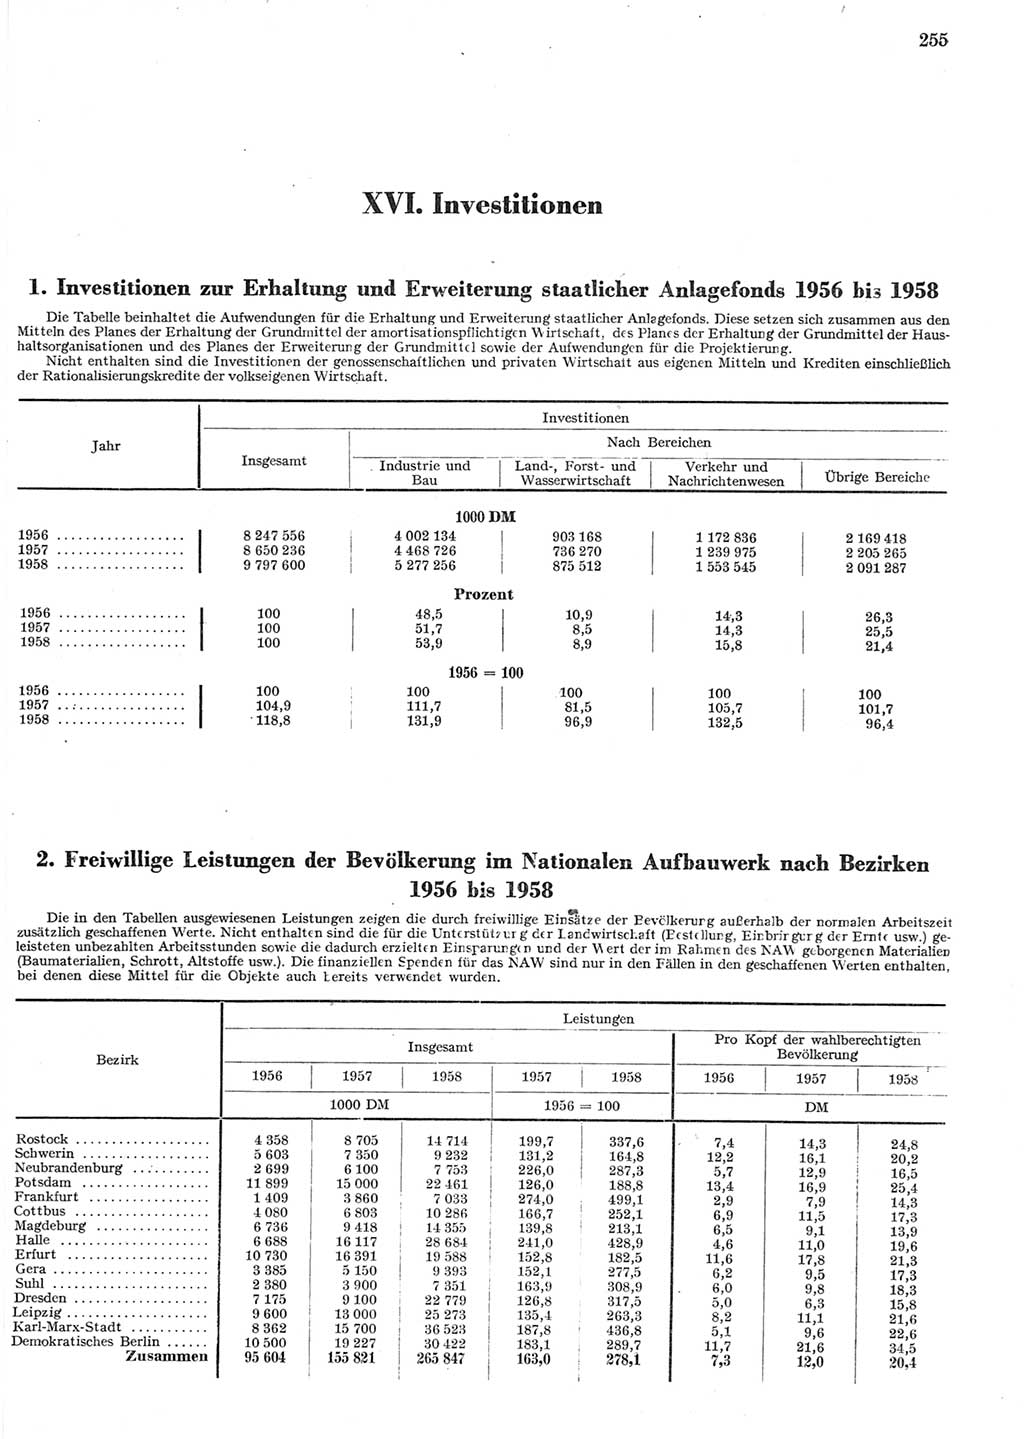 Statistisches Jahrbuch der Deutschen Demokratischen Republik (DDR) 1958, Seite 255 (Stat. Jb. DDR 1958, S. 255)